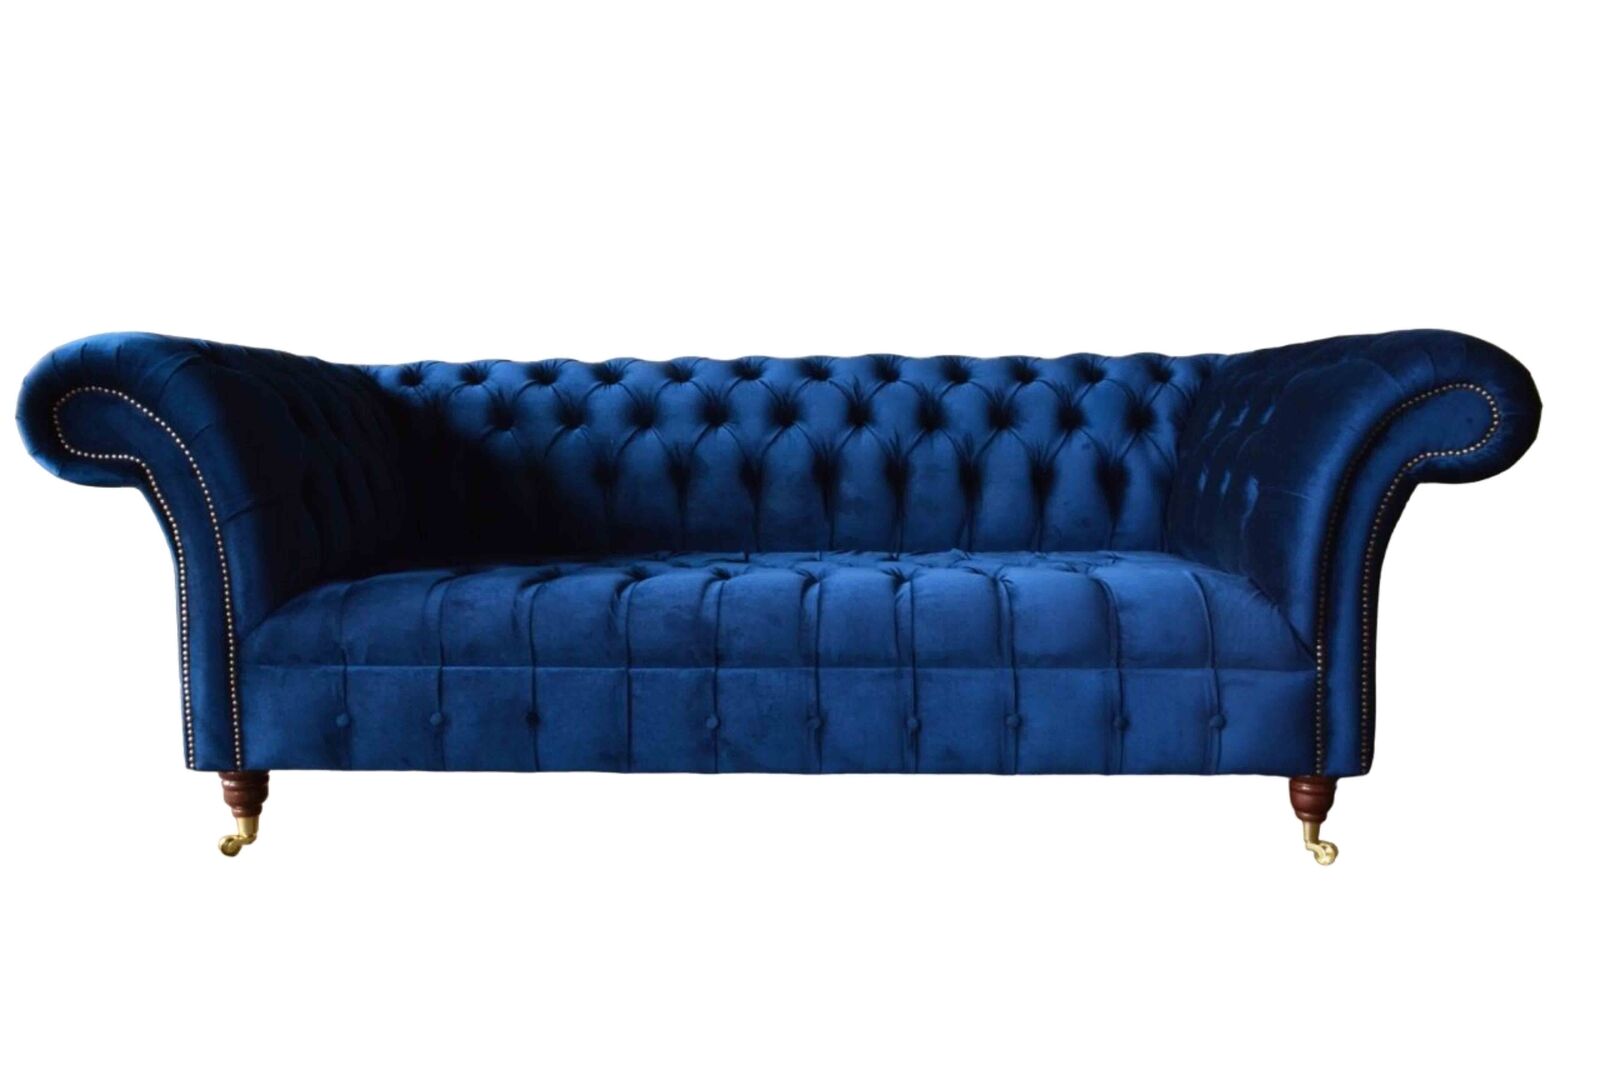 Blaue Chesterfield Dreisitzer Sofa 3 Sitzer Sofas Luxus Textil Couchen